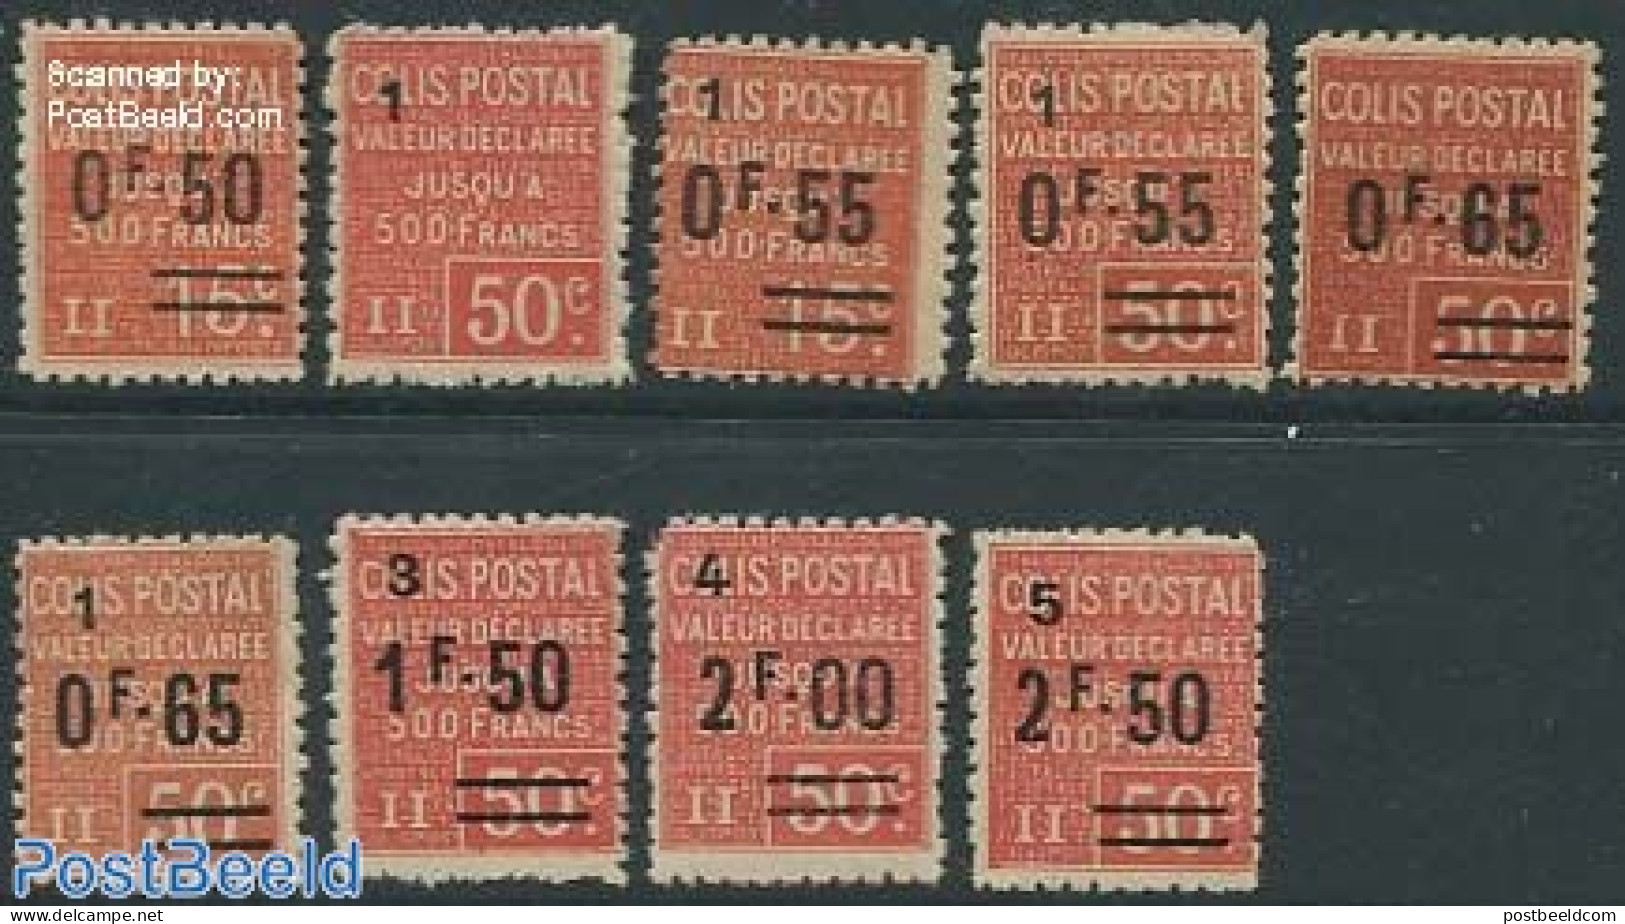 France 1926 Colis Postal 9v, Unused (hinged) - Neufs